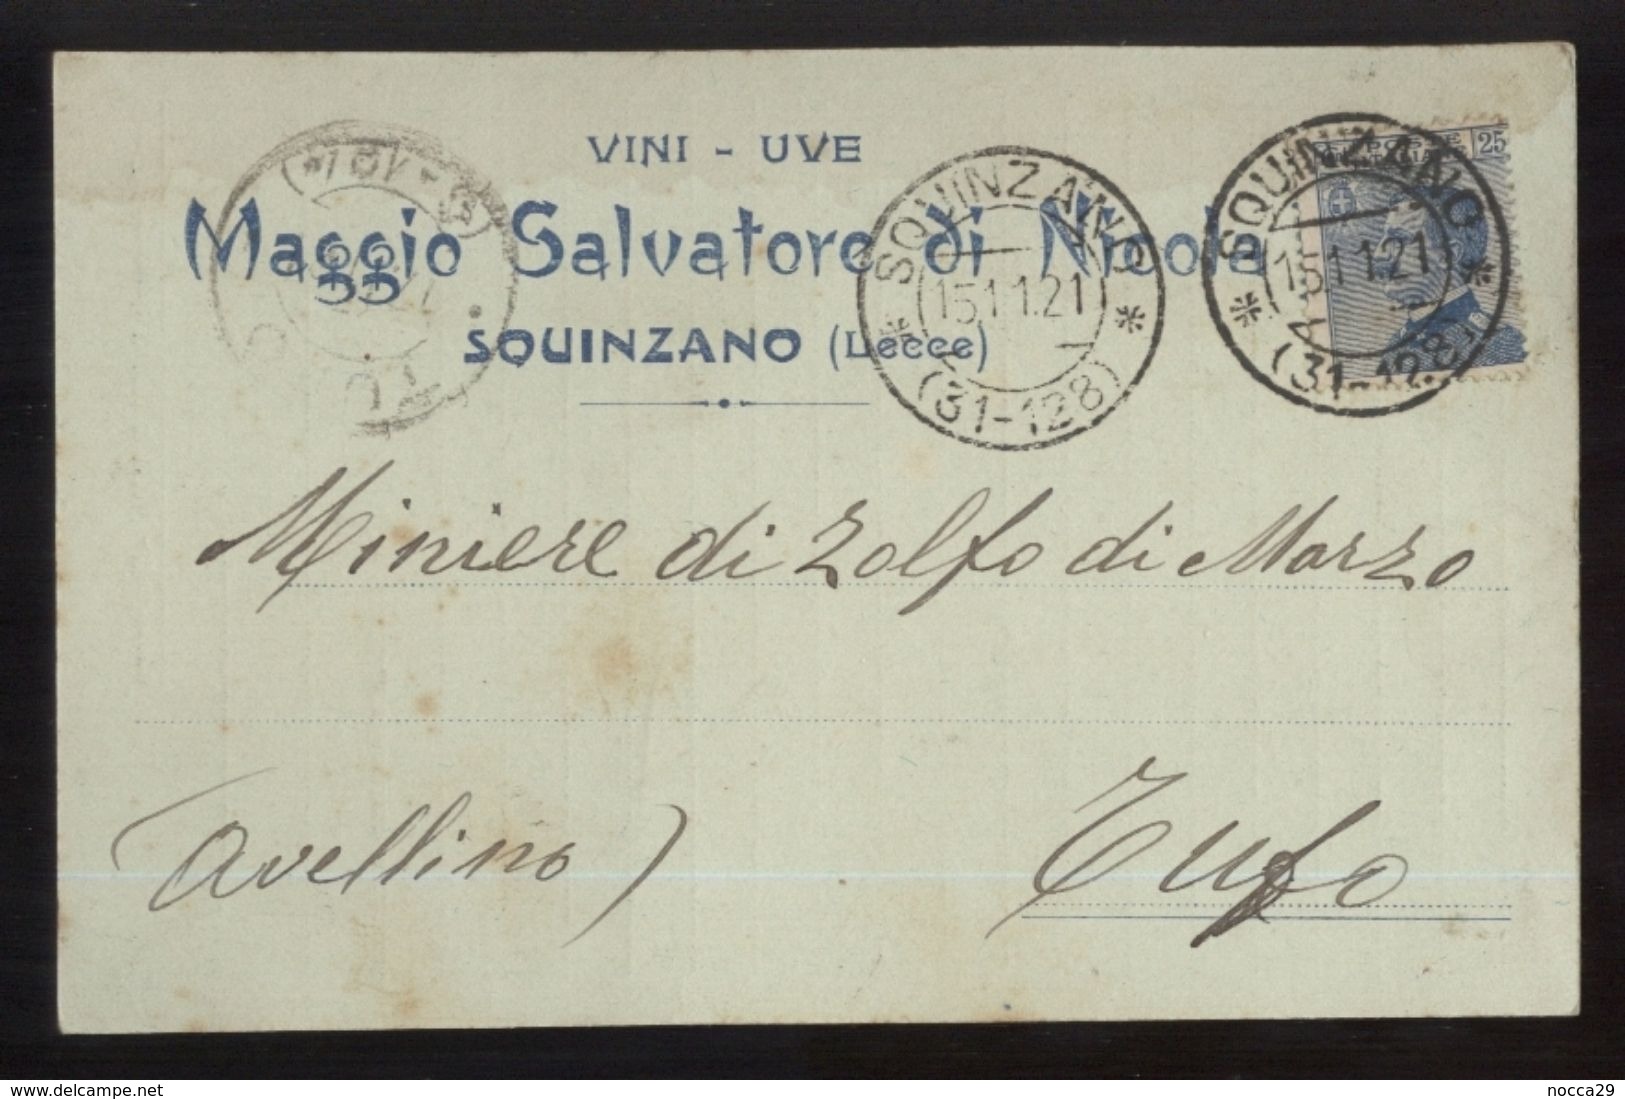 SQUINZANO - LECCE  -  1921 - CARTOLINA COMMERCIALE -  MAGGIO SALVATORE  -   VINI - UVE - Negozi